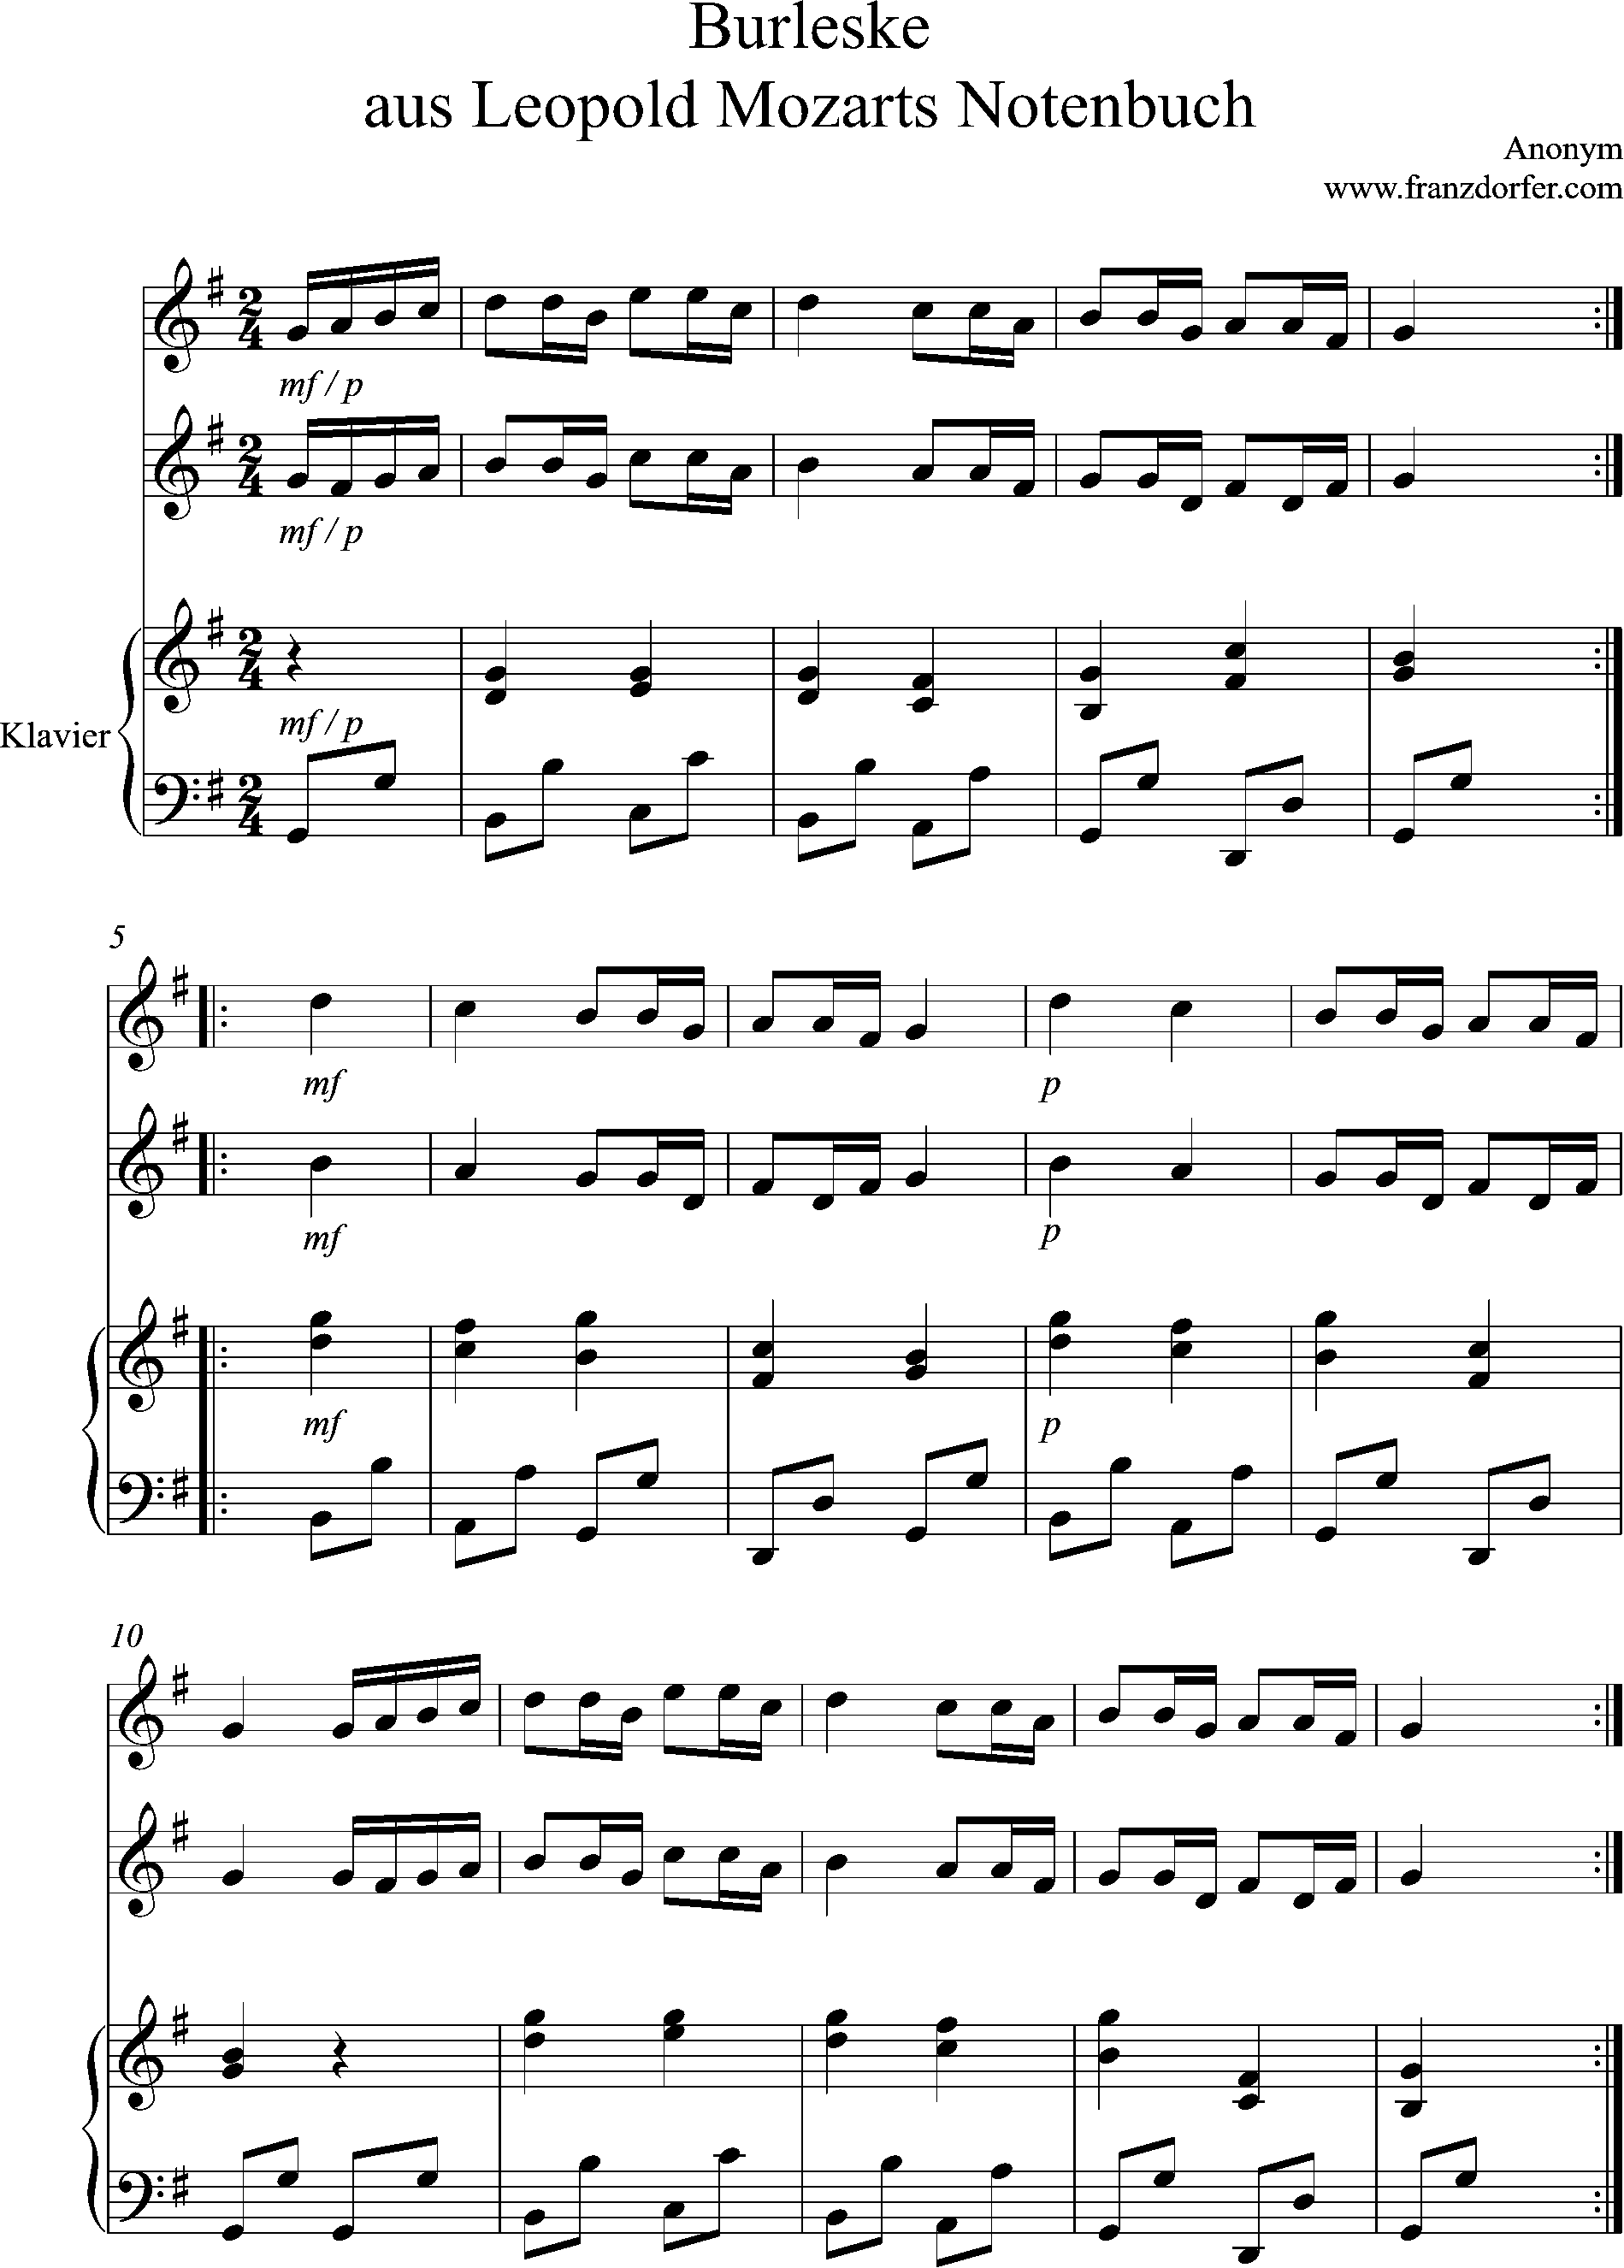 Burleske aus L. Mozarts notenbuch, Duo